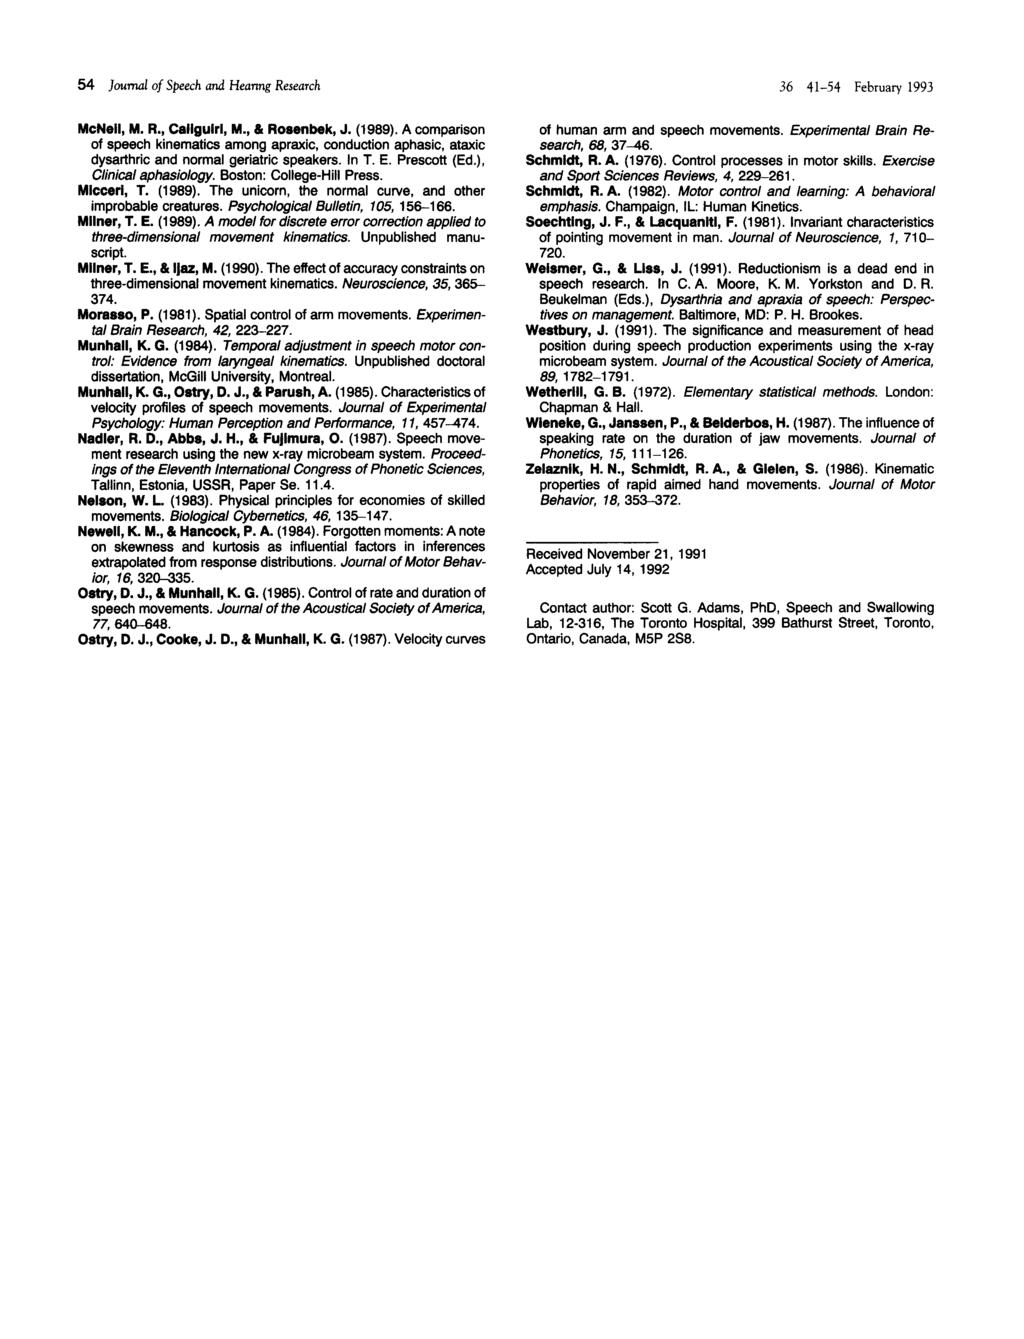 54 Journal of Speech and Heanng Research McNeil, M. R., Caliguirl, M., & Rosenbek, J. (1989).